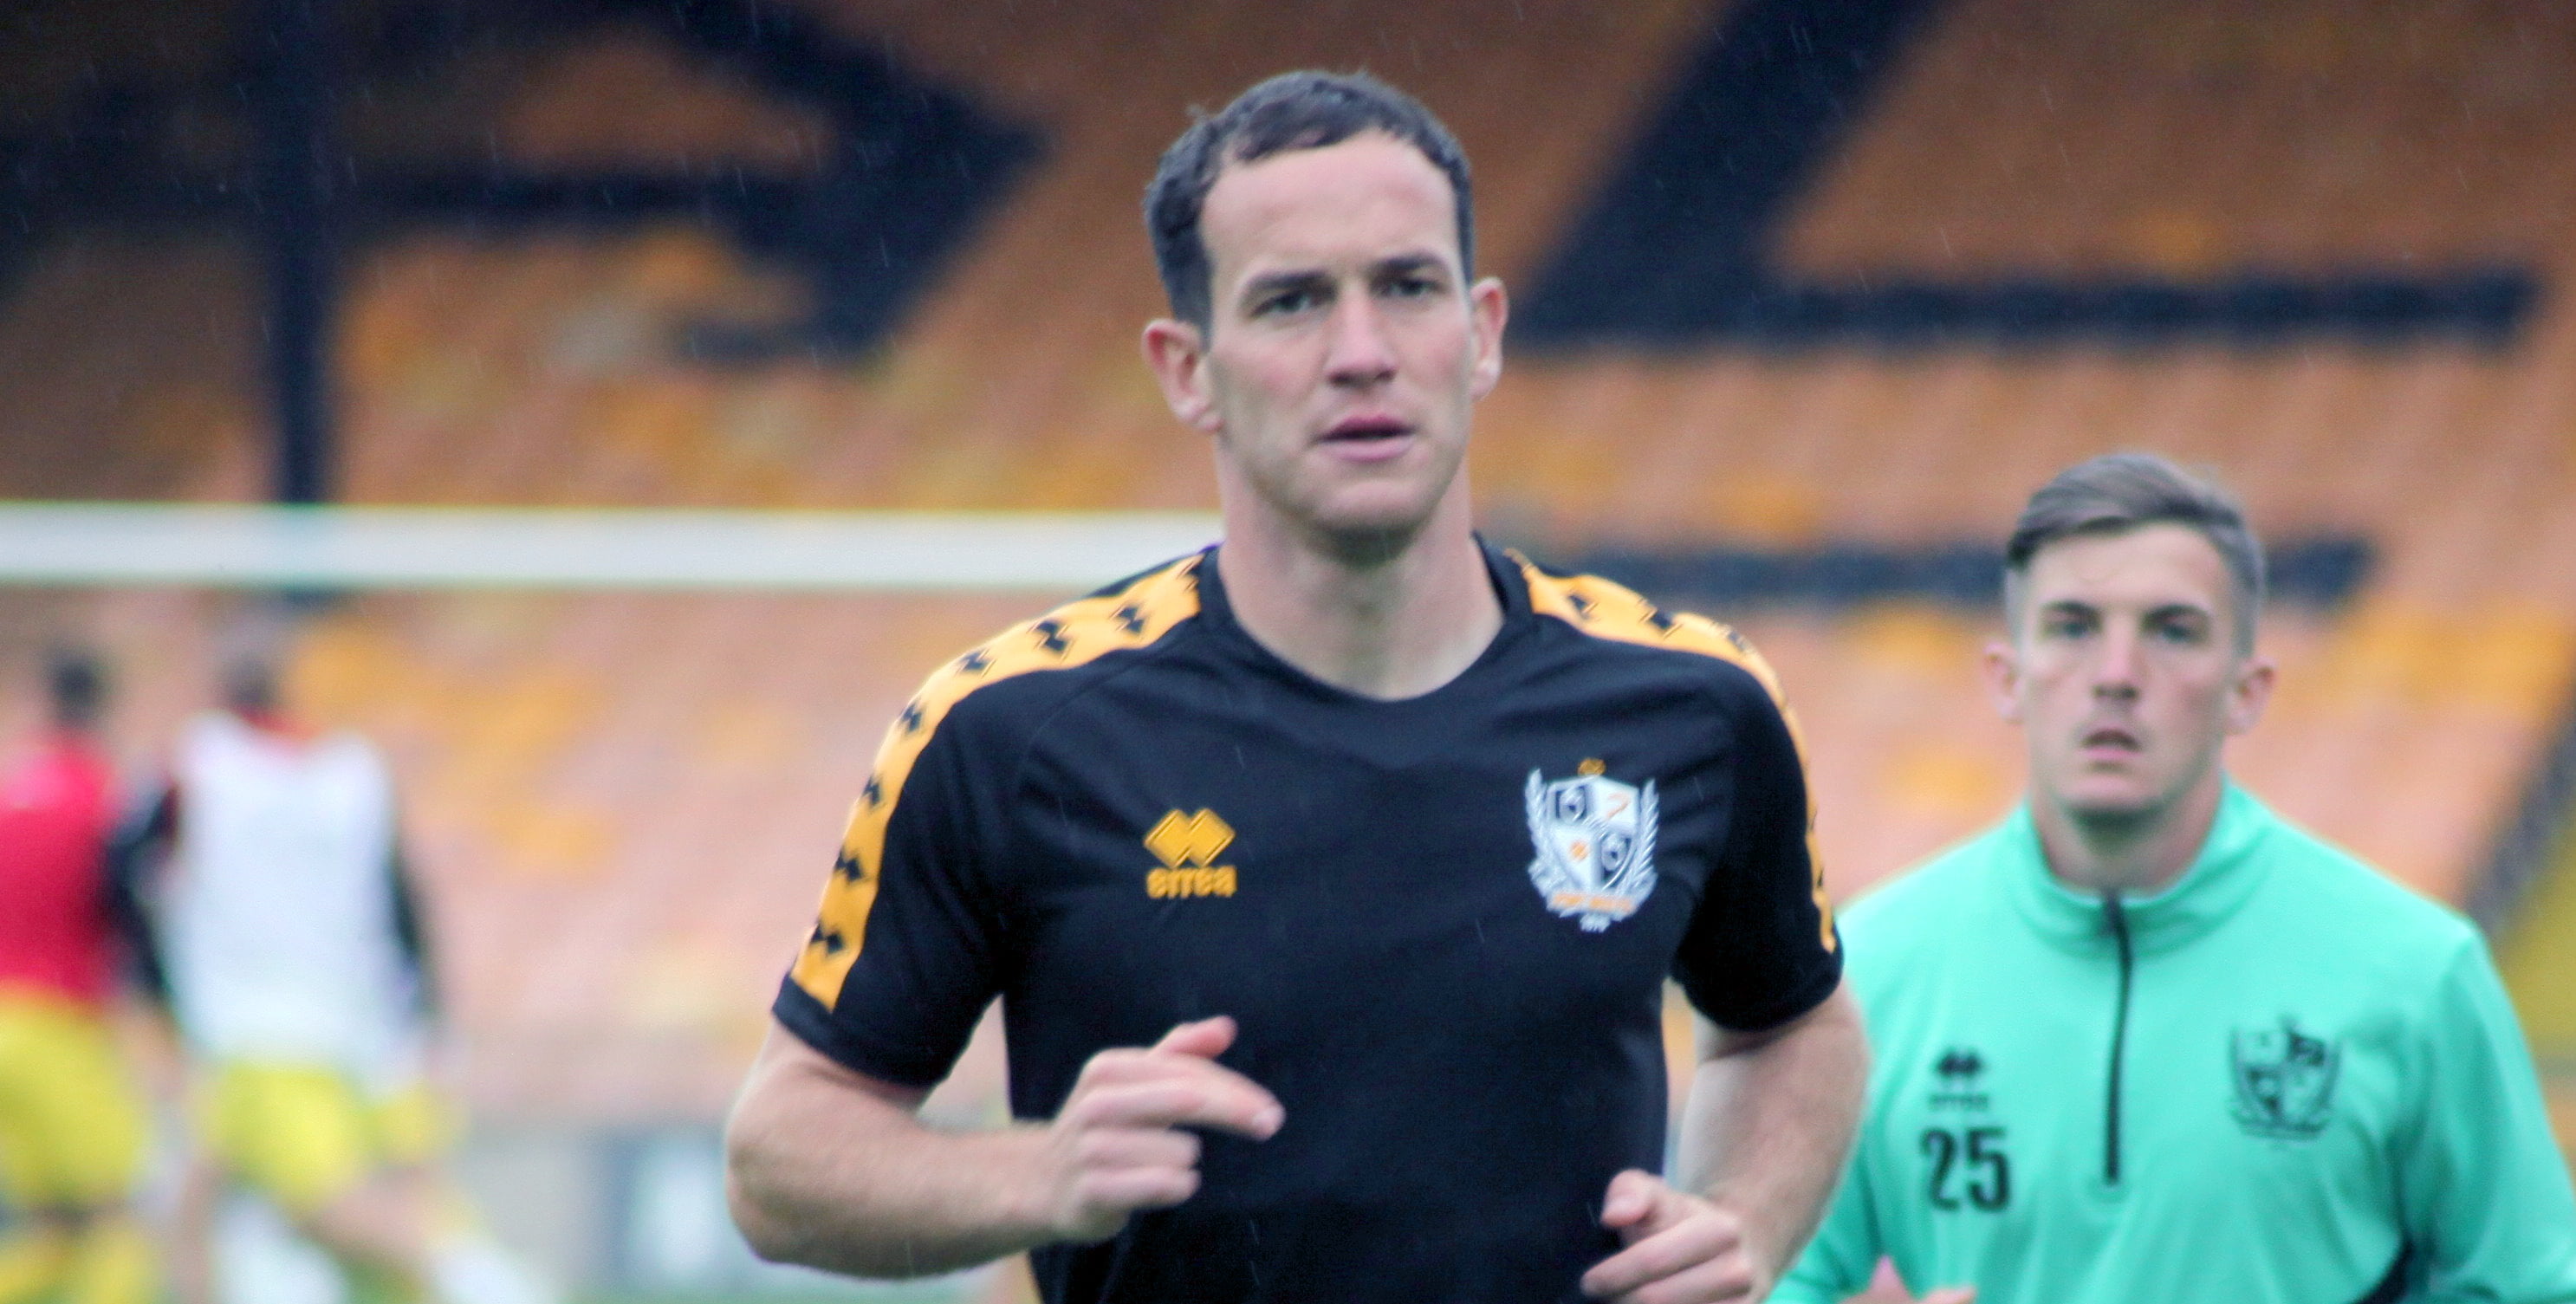 Port Vale midfielder Luke Joyce